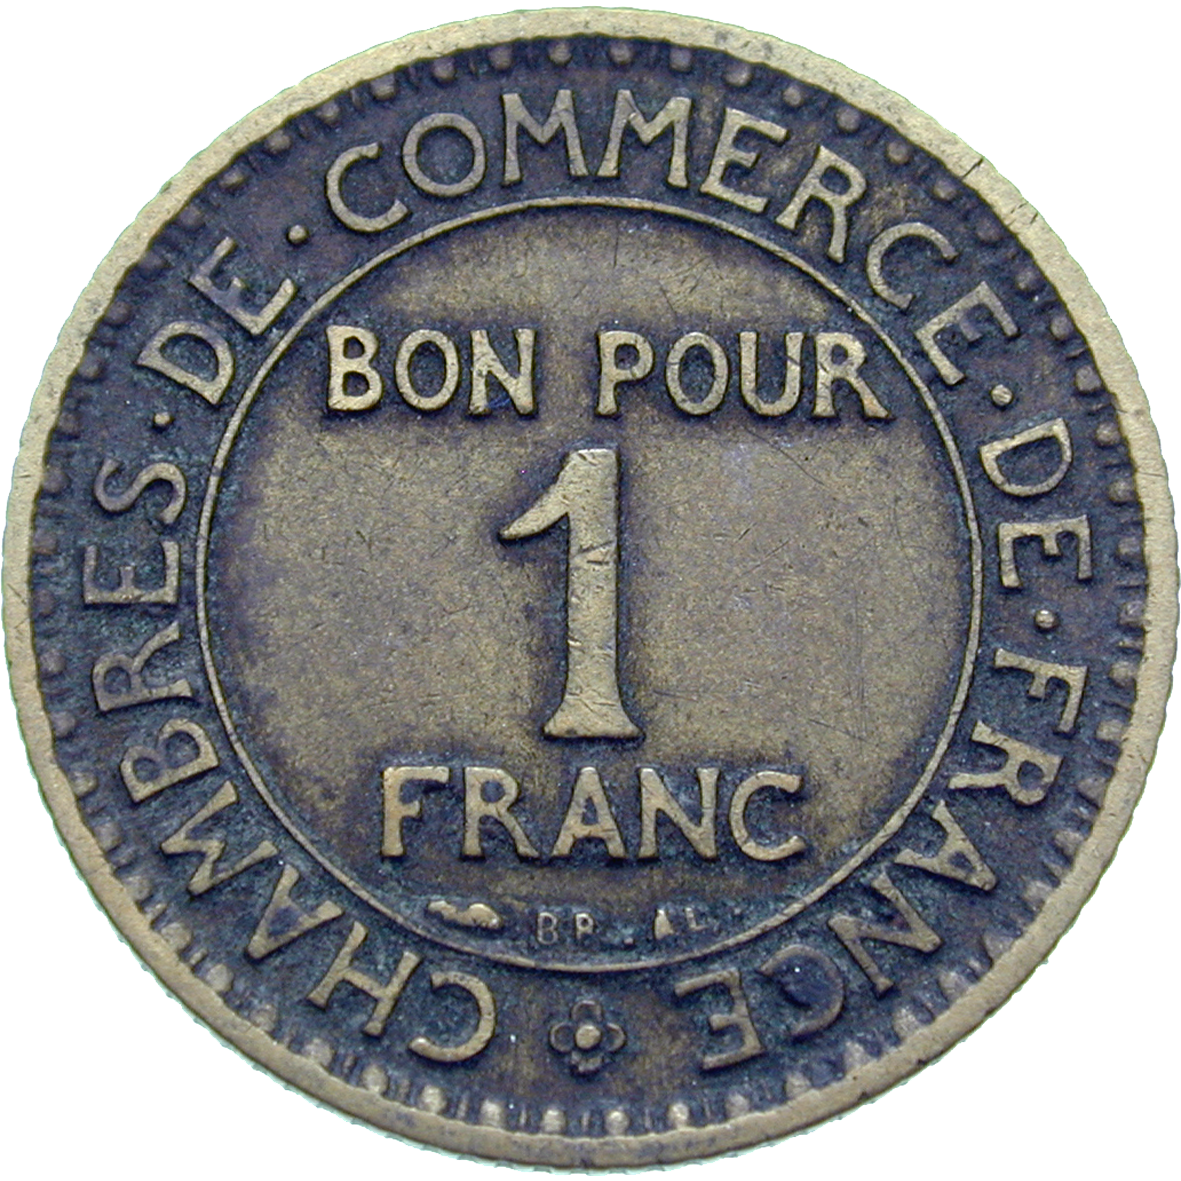 Republic of France, Chambres de Commerce de France, Bon pour 1 Franc 1921 (reverse)